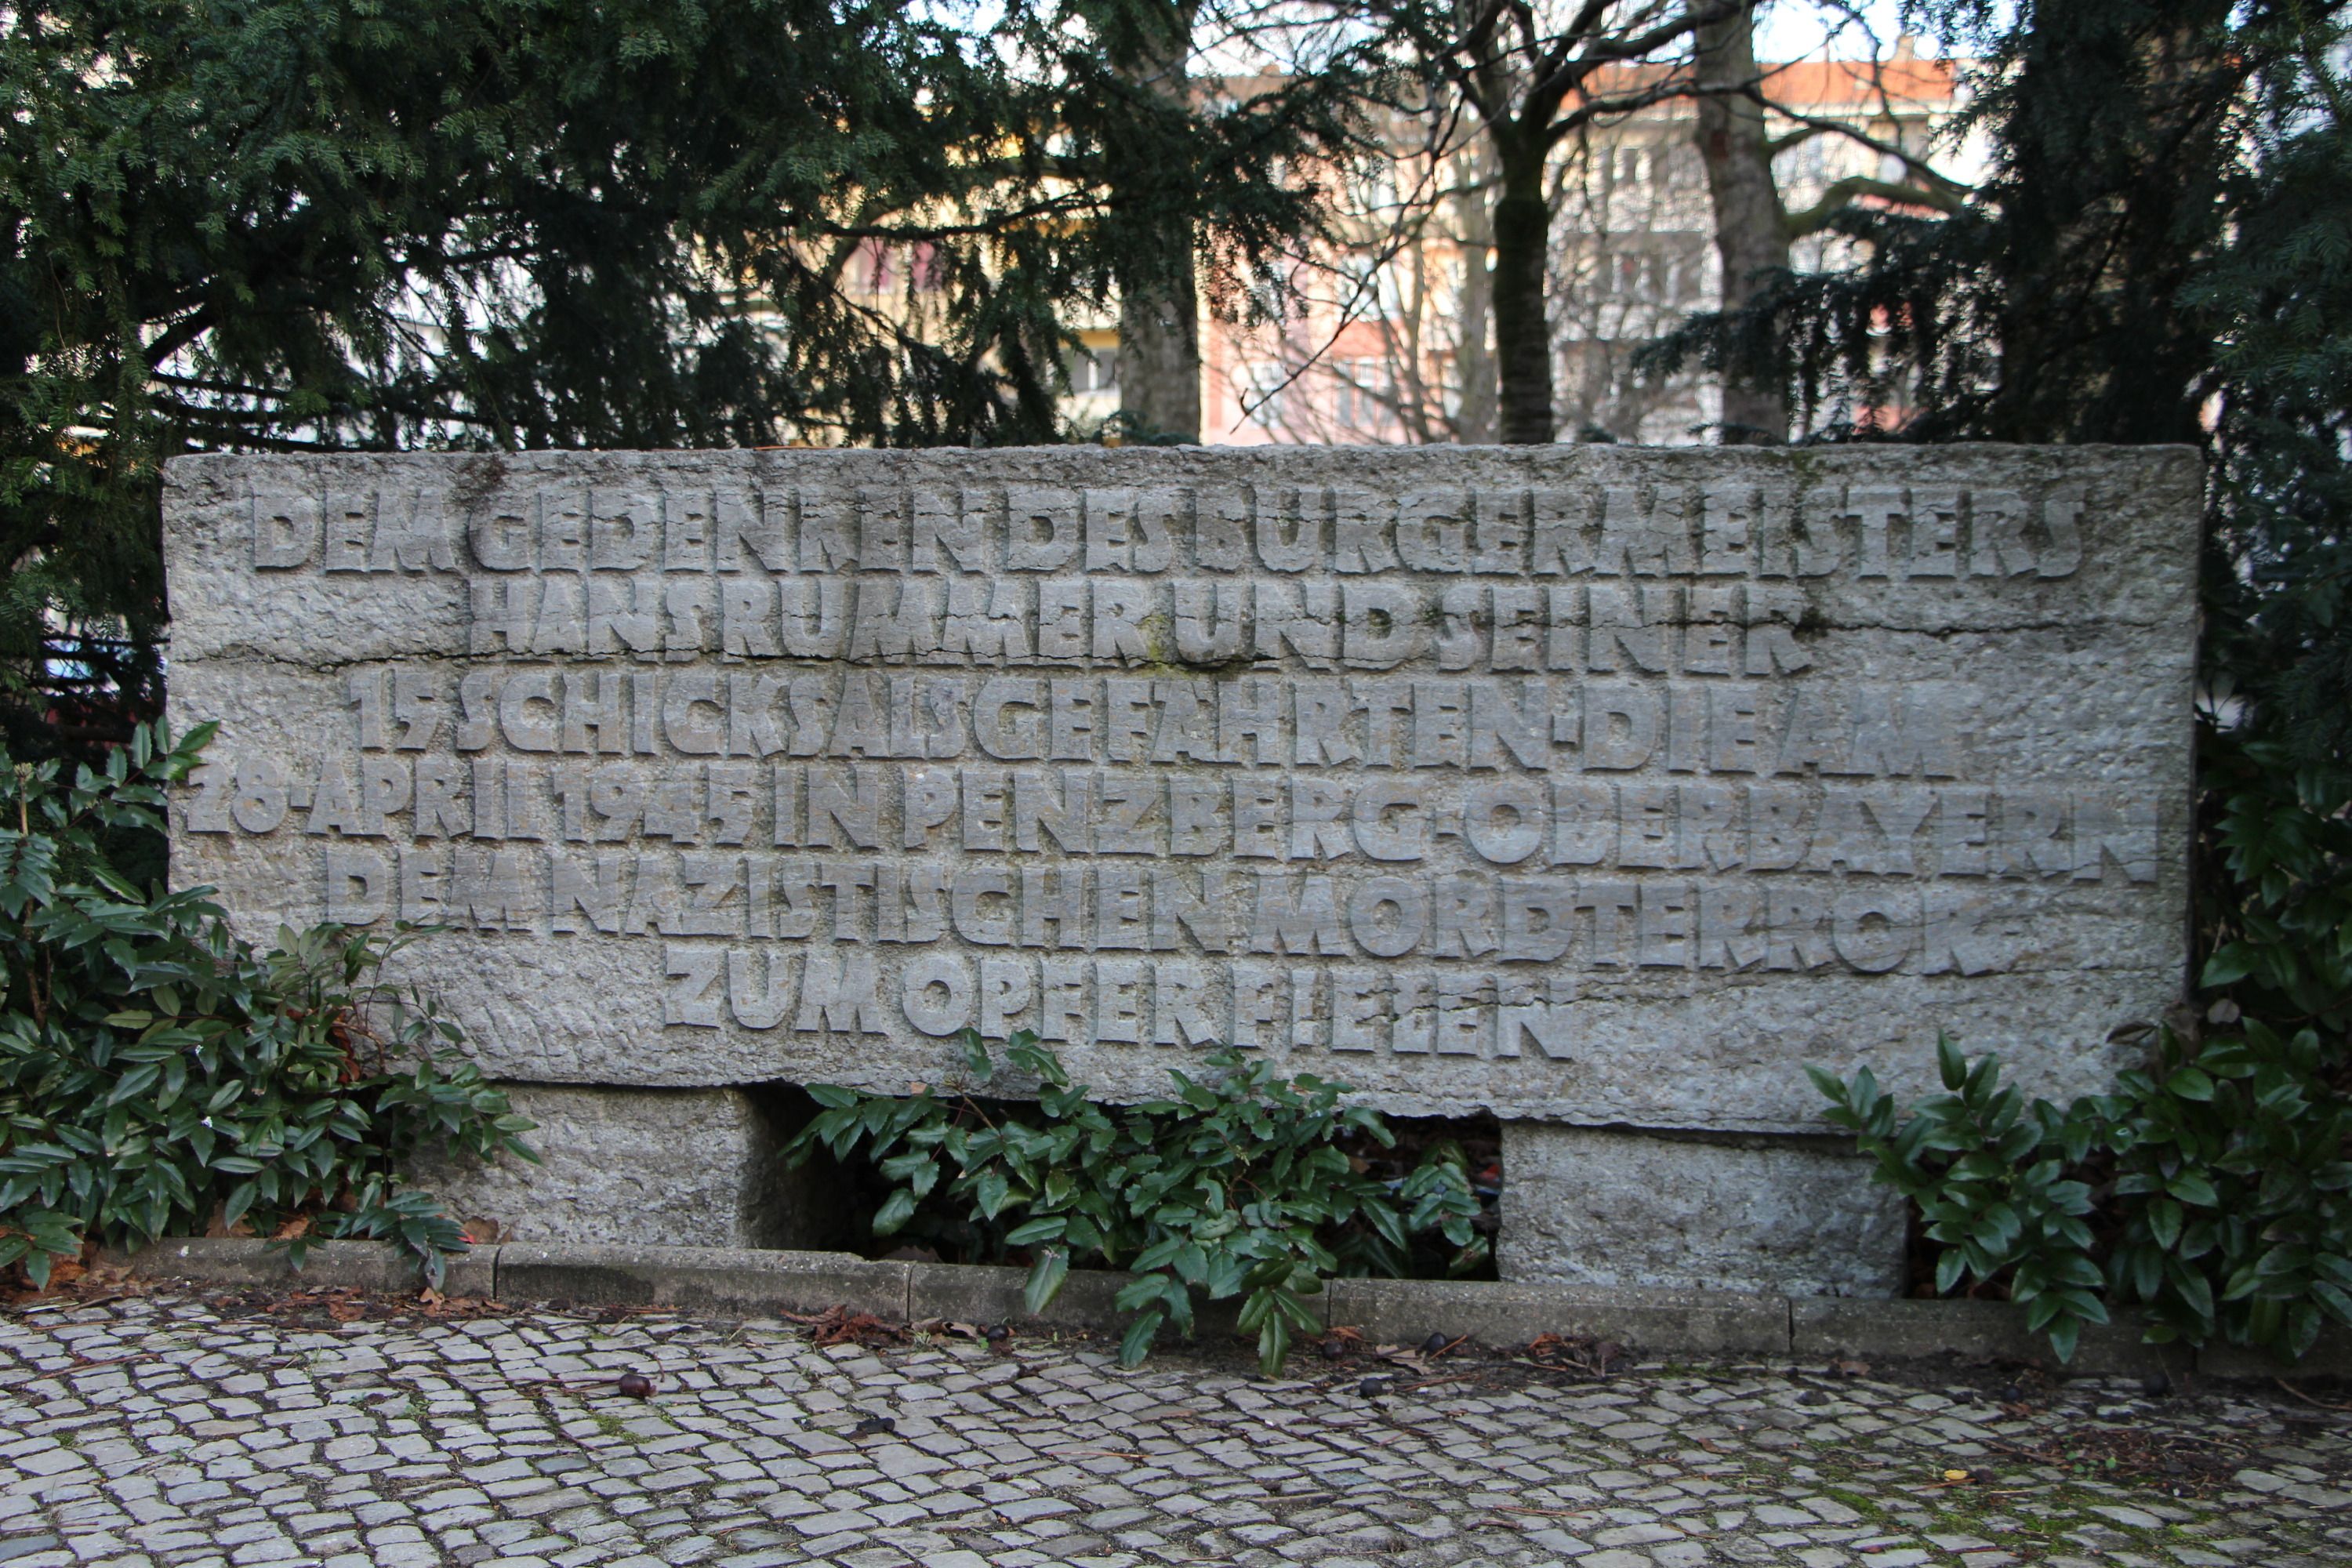 Bildvergrößerung: Ein Gedenkstein erinnert an die "Penzberger Mordnacht"